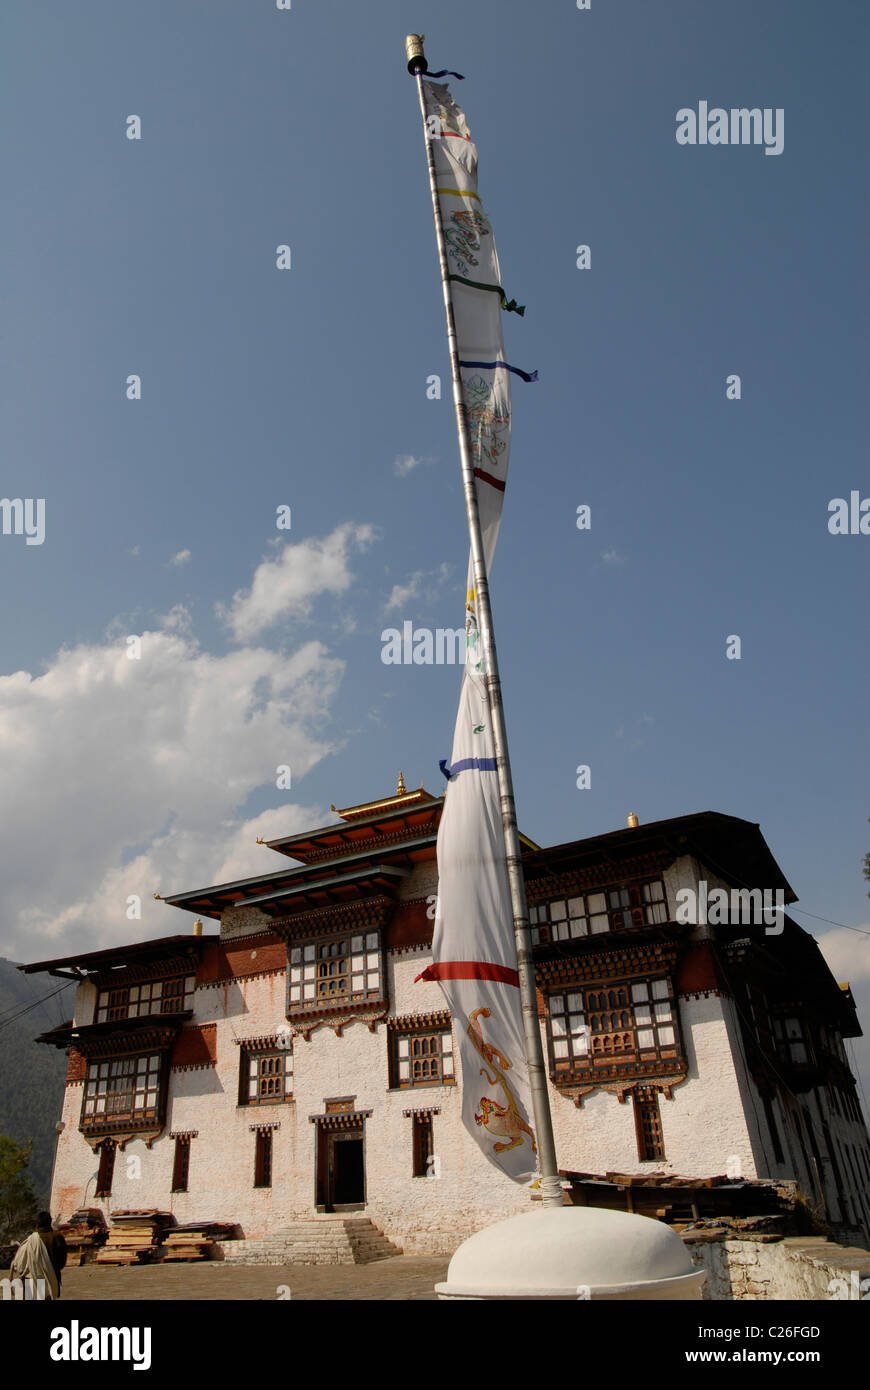 Prayer Flag and Dzong, Trashigang, East Bhutan Stock Photo